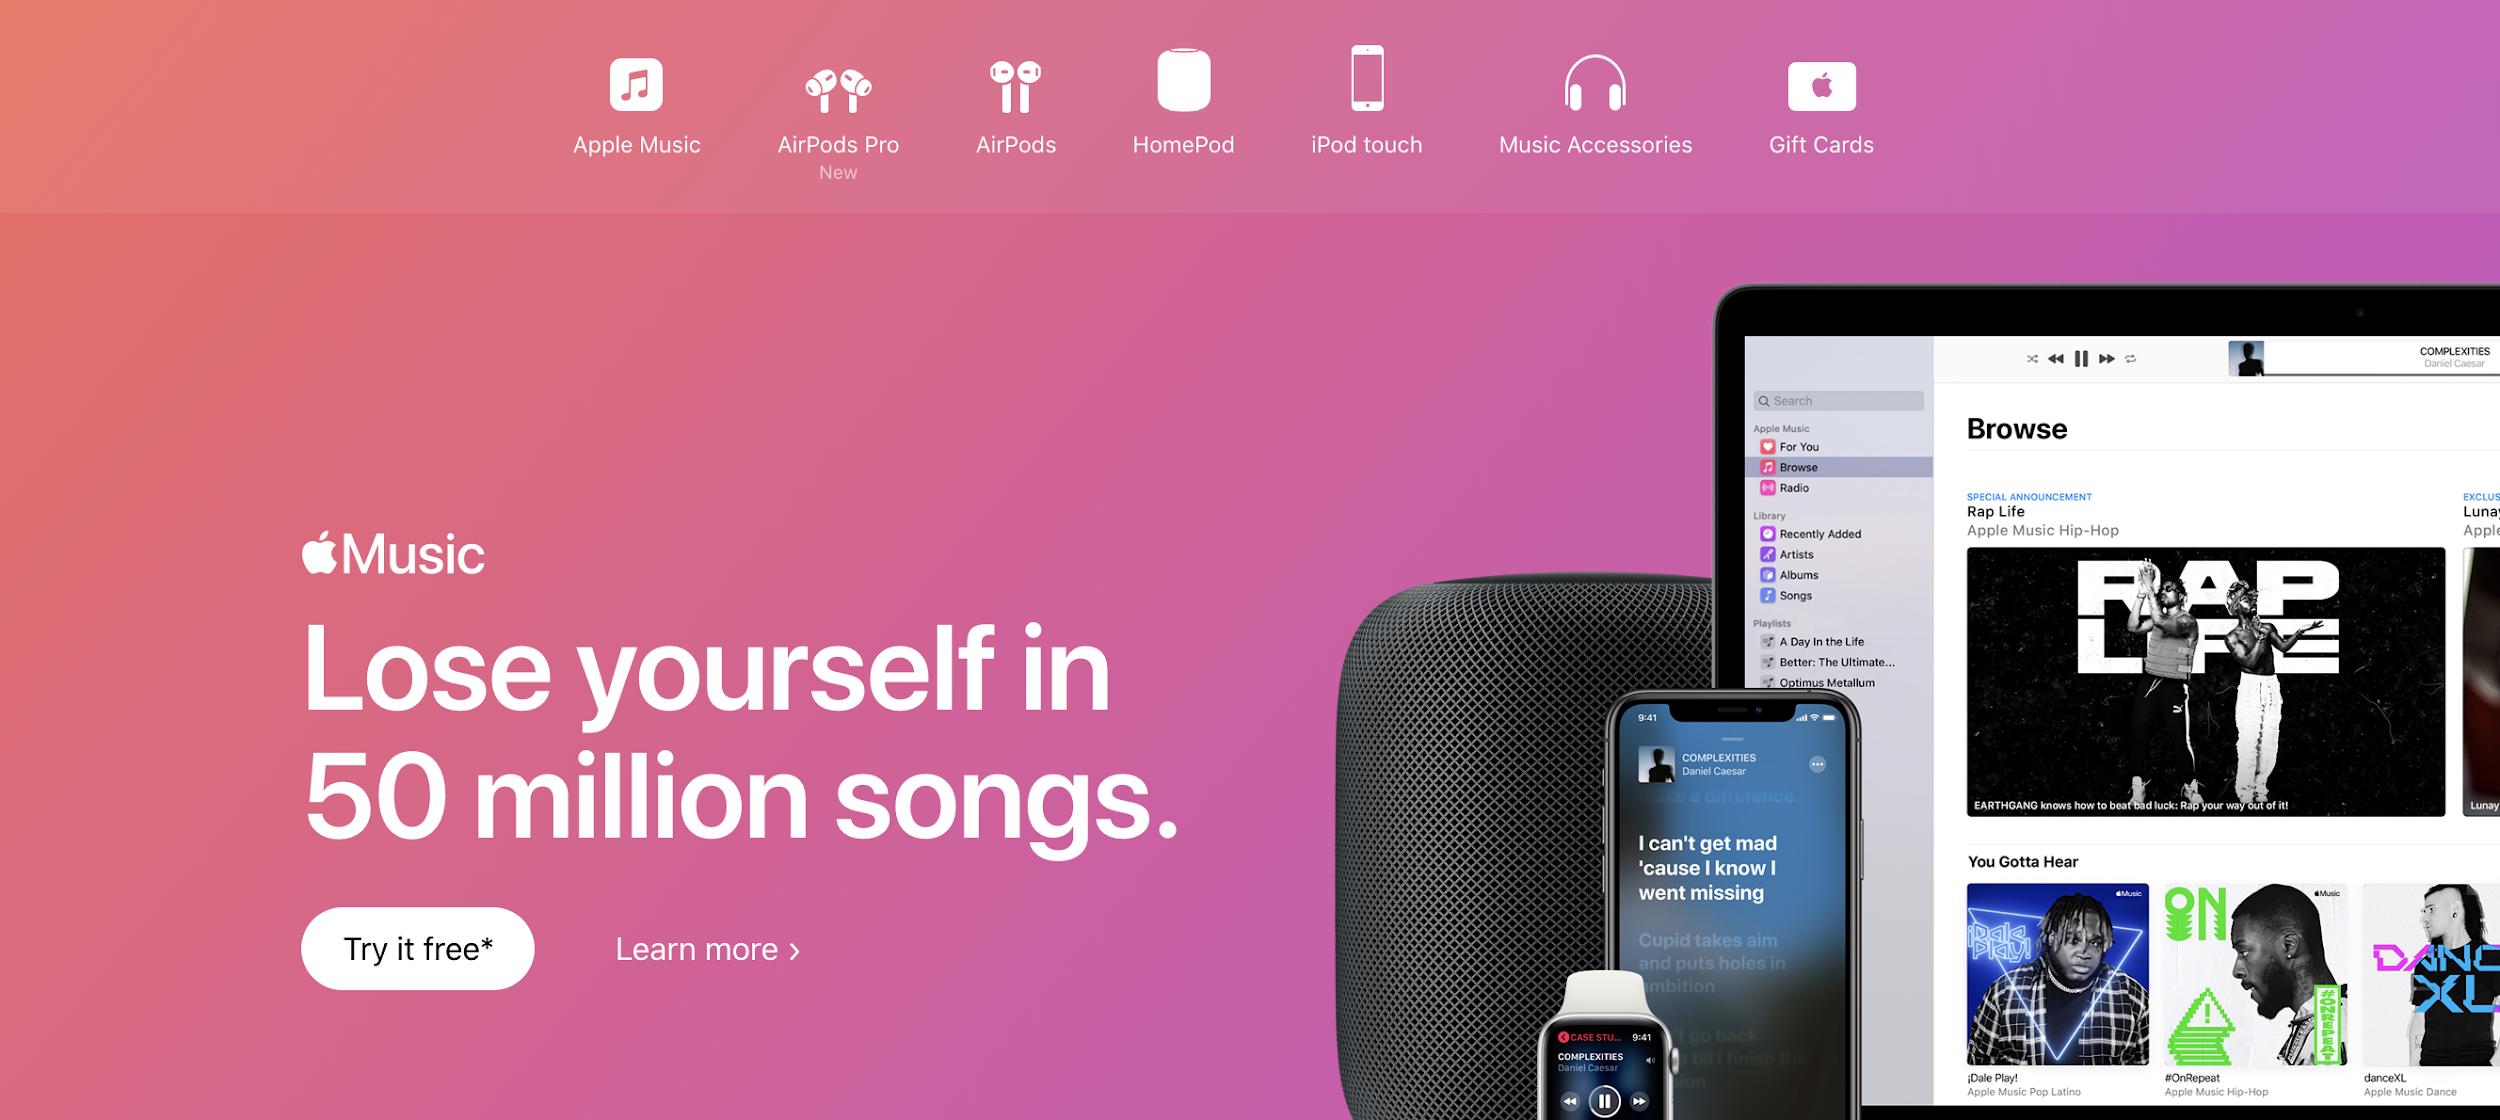 Apple Music como exemplo de plataforma digitais para música